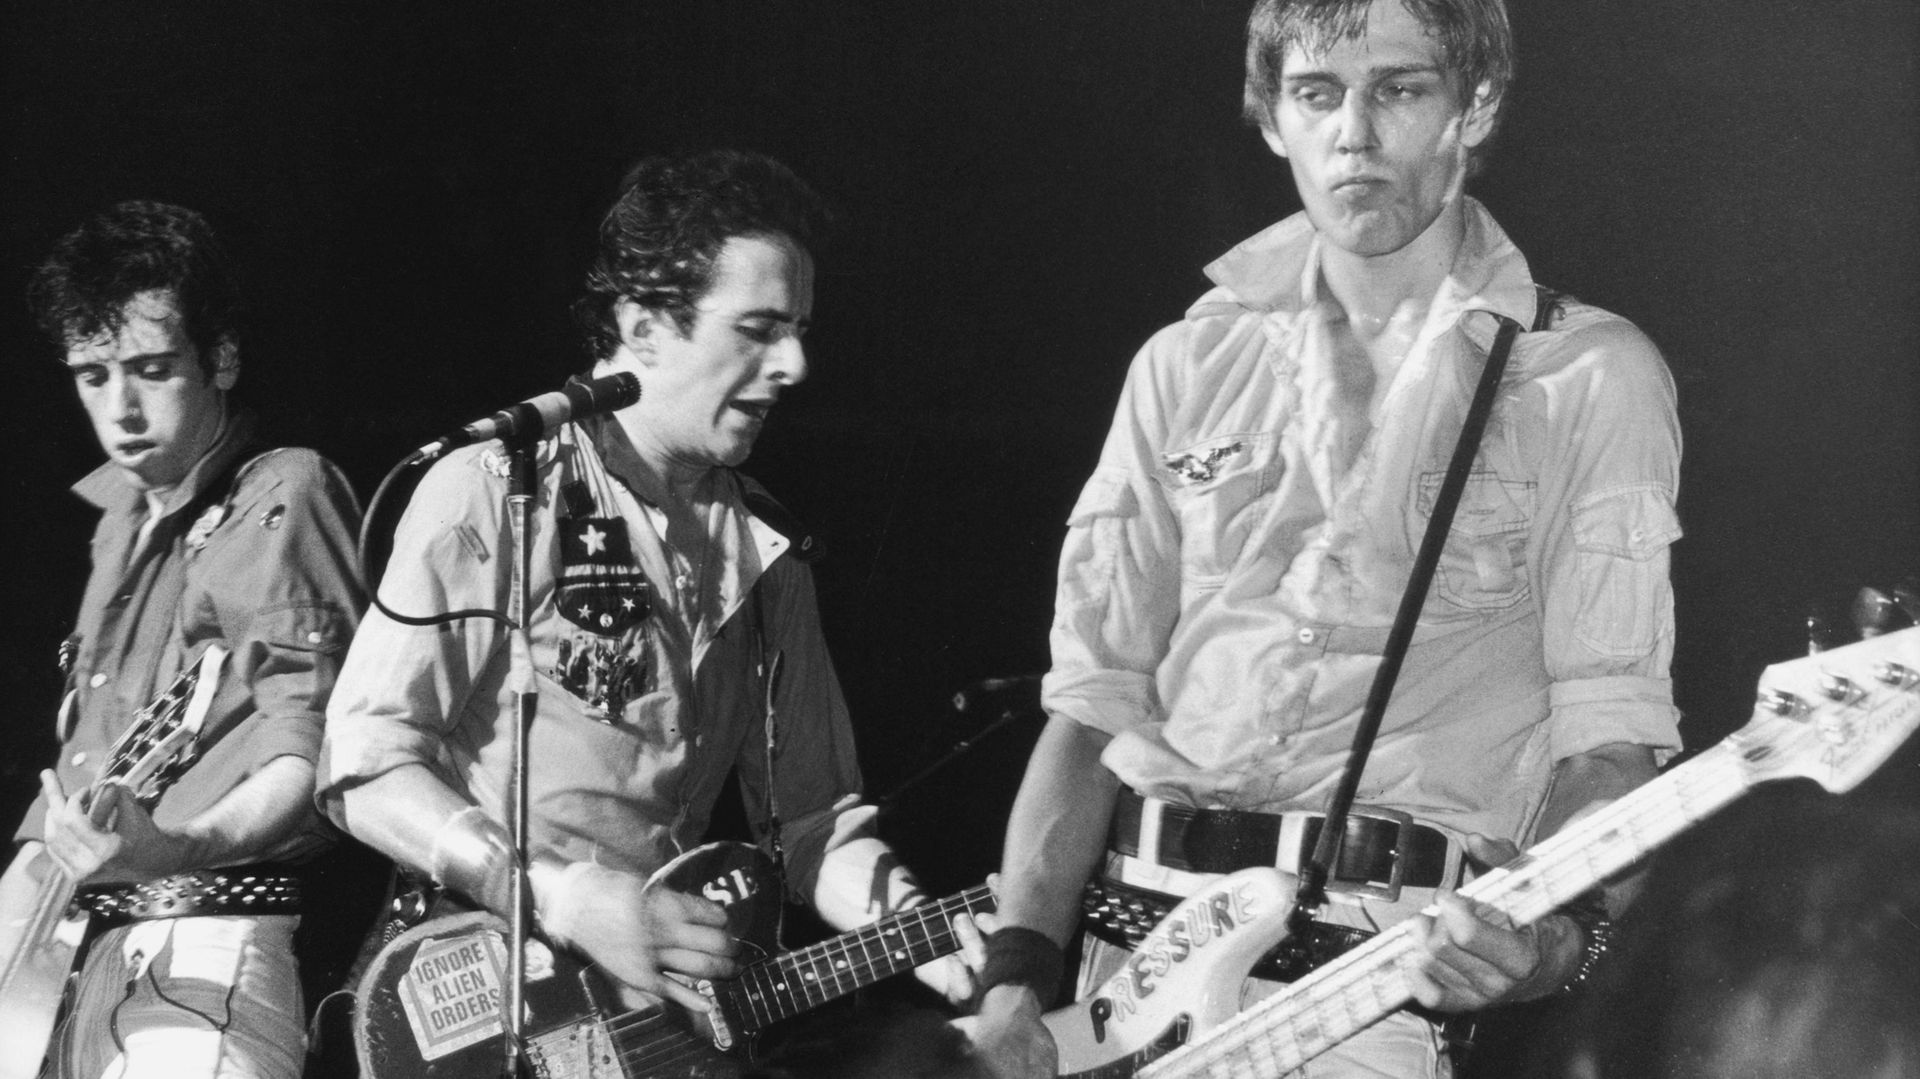 Prochain projet: un biopic sur The Clash?